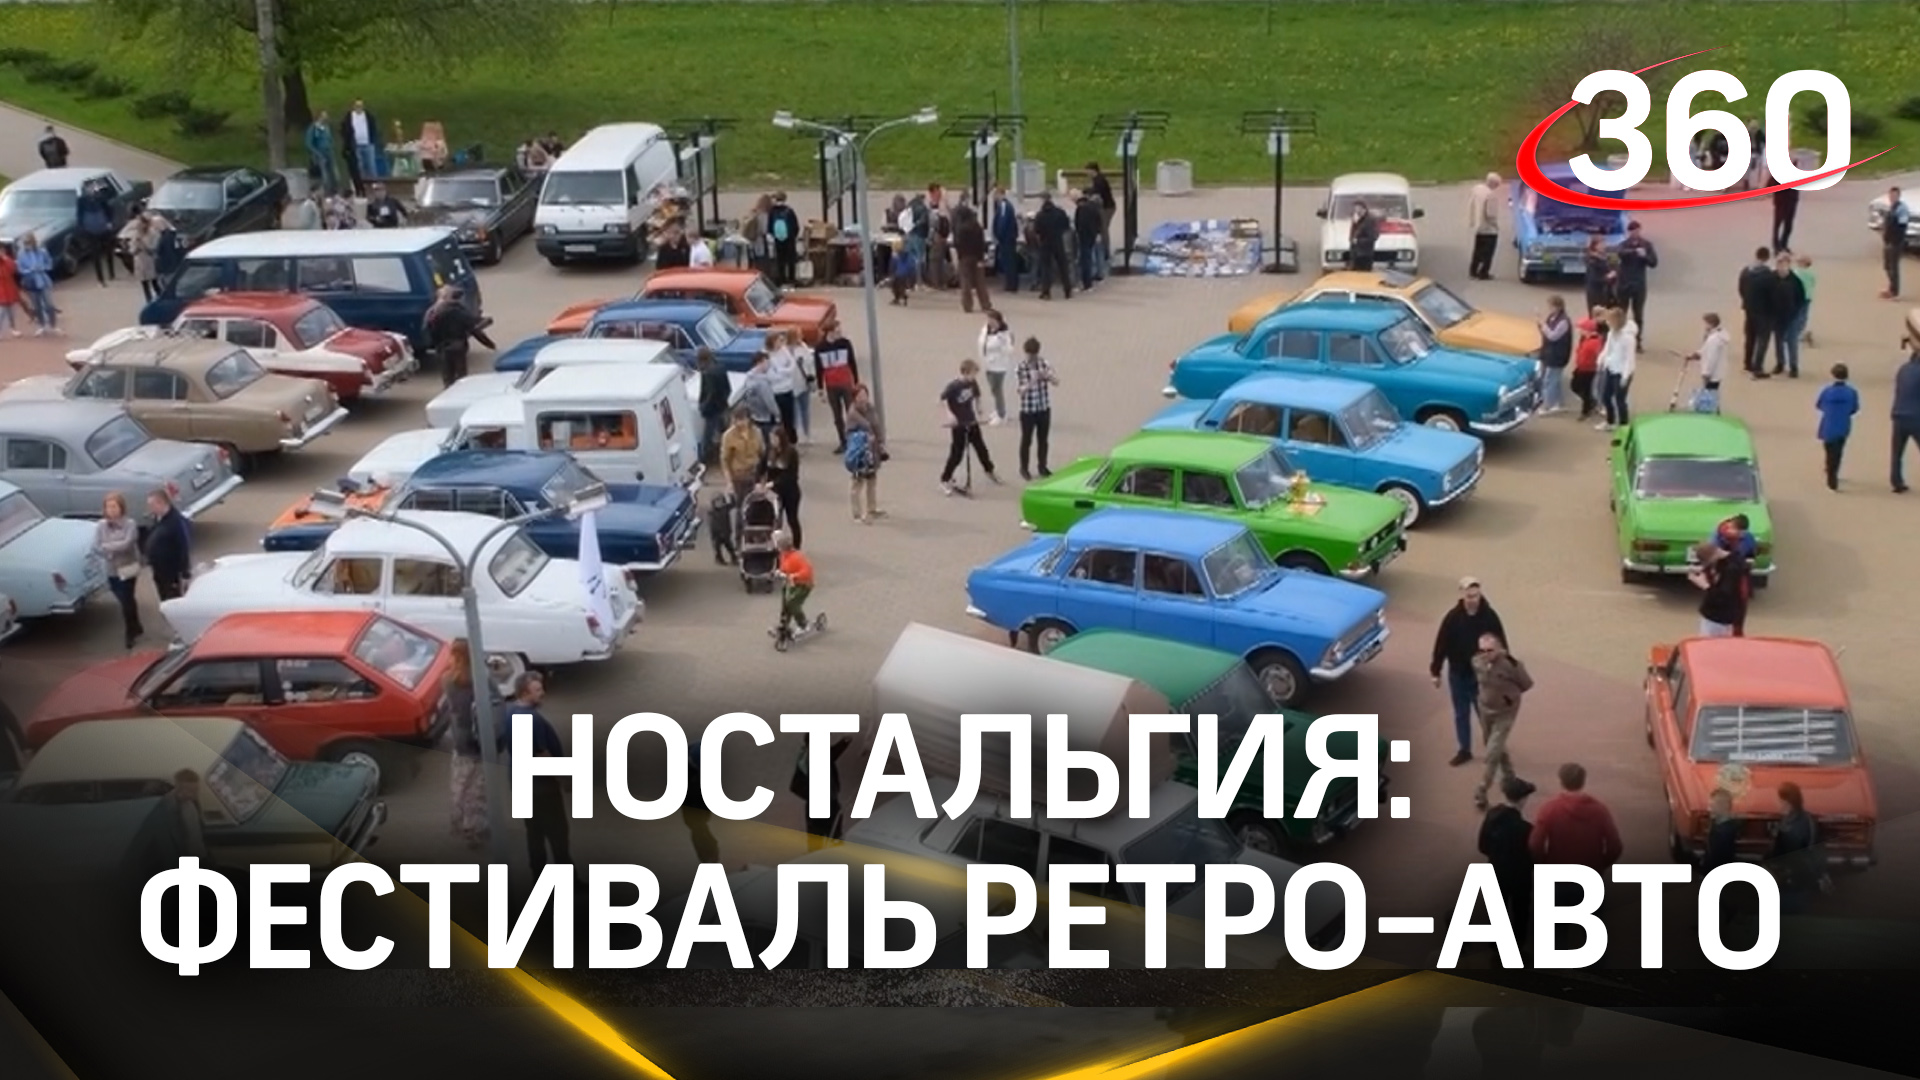 Модели со всего мира: фестиваль ретро-авто провели в Пущине